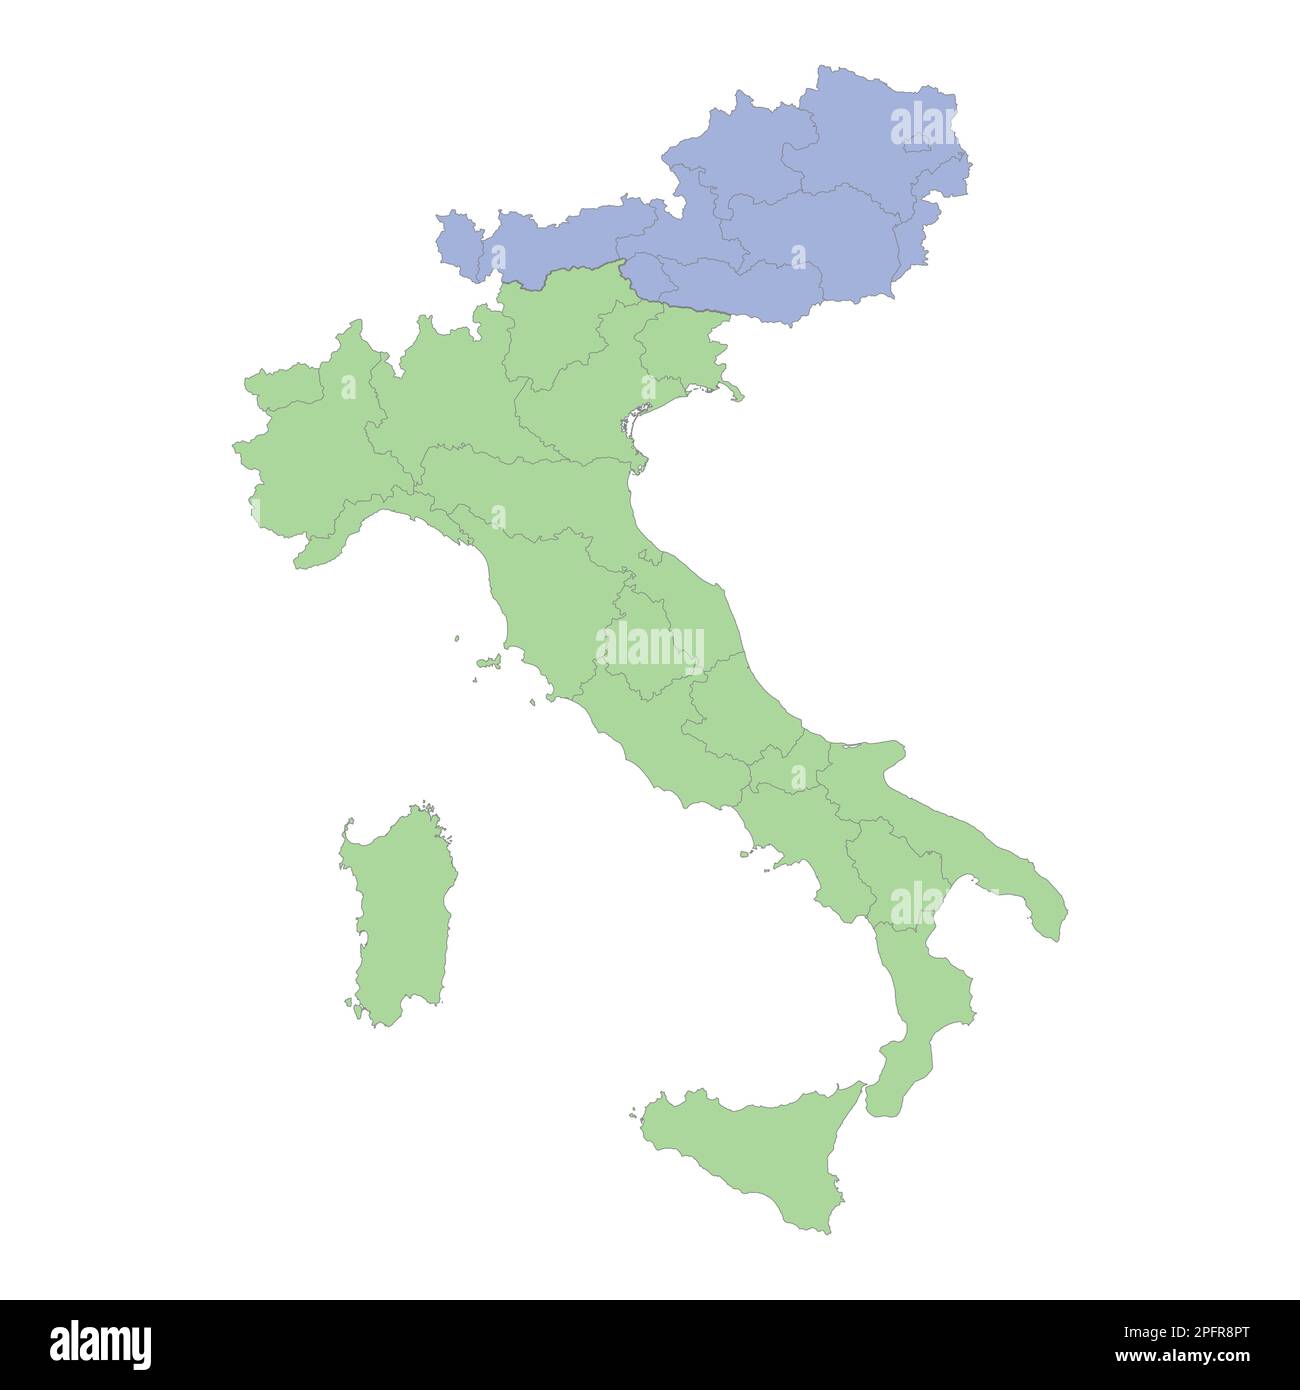 Mappa politica di alta qualità dell'Italia e dell'Austria con confini delle regioni o province. Illustrazione vettoriale Illustrazione Vettoriale